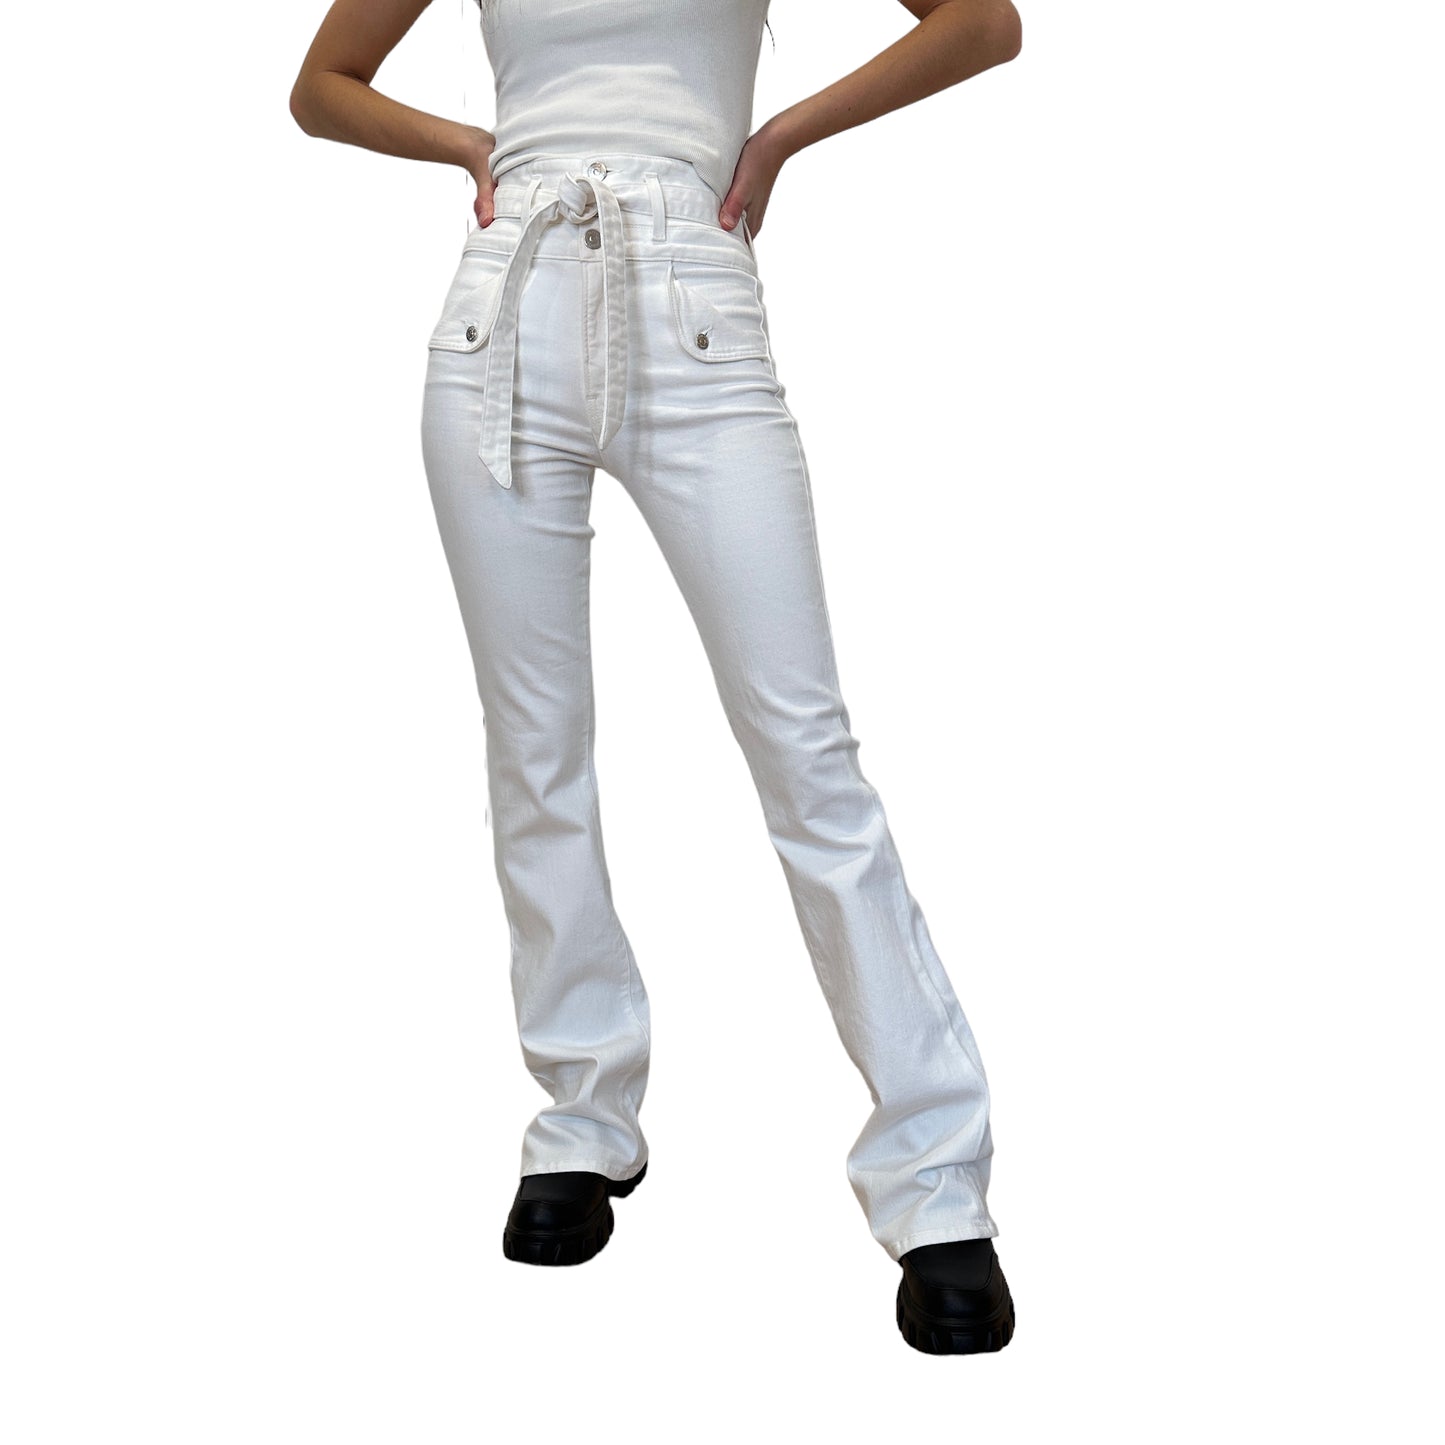 White Tie Waist Jeans - 25